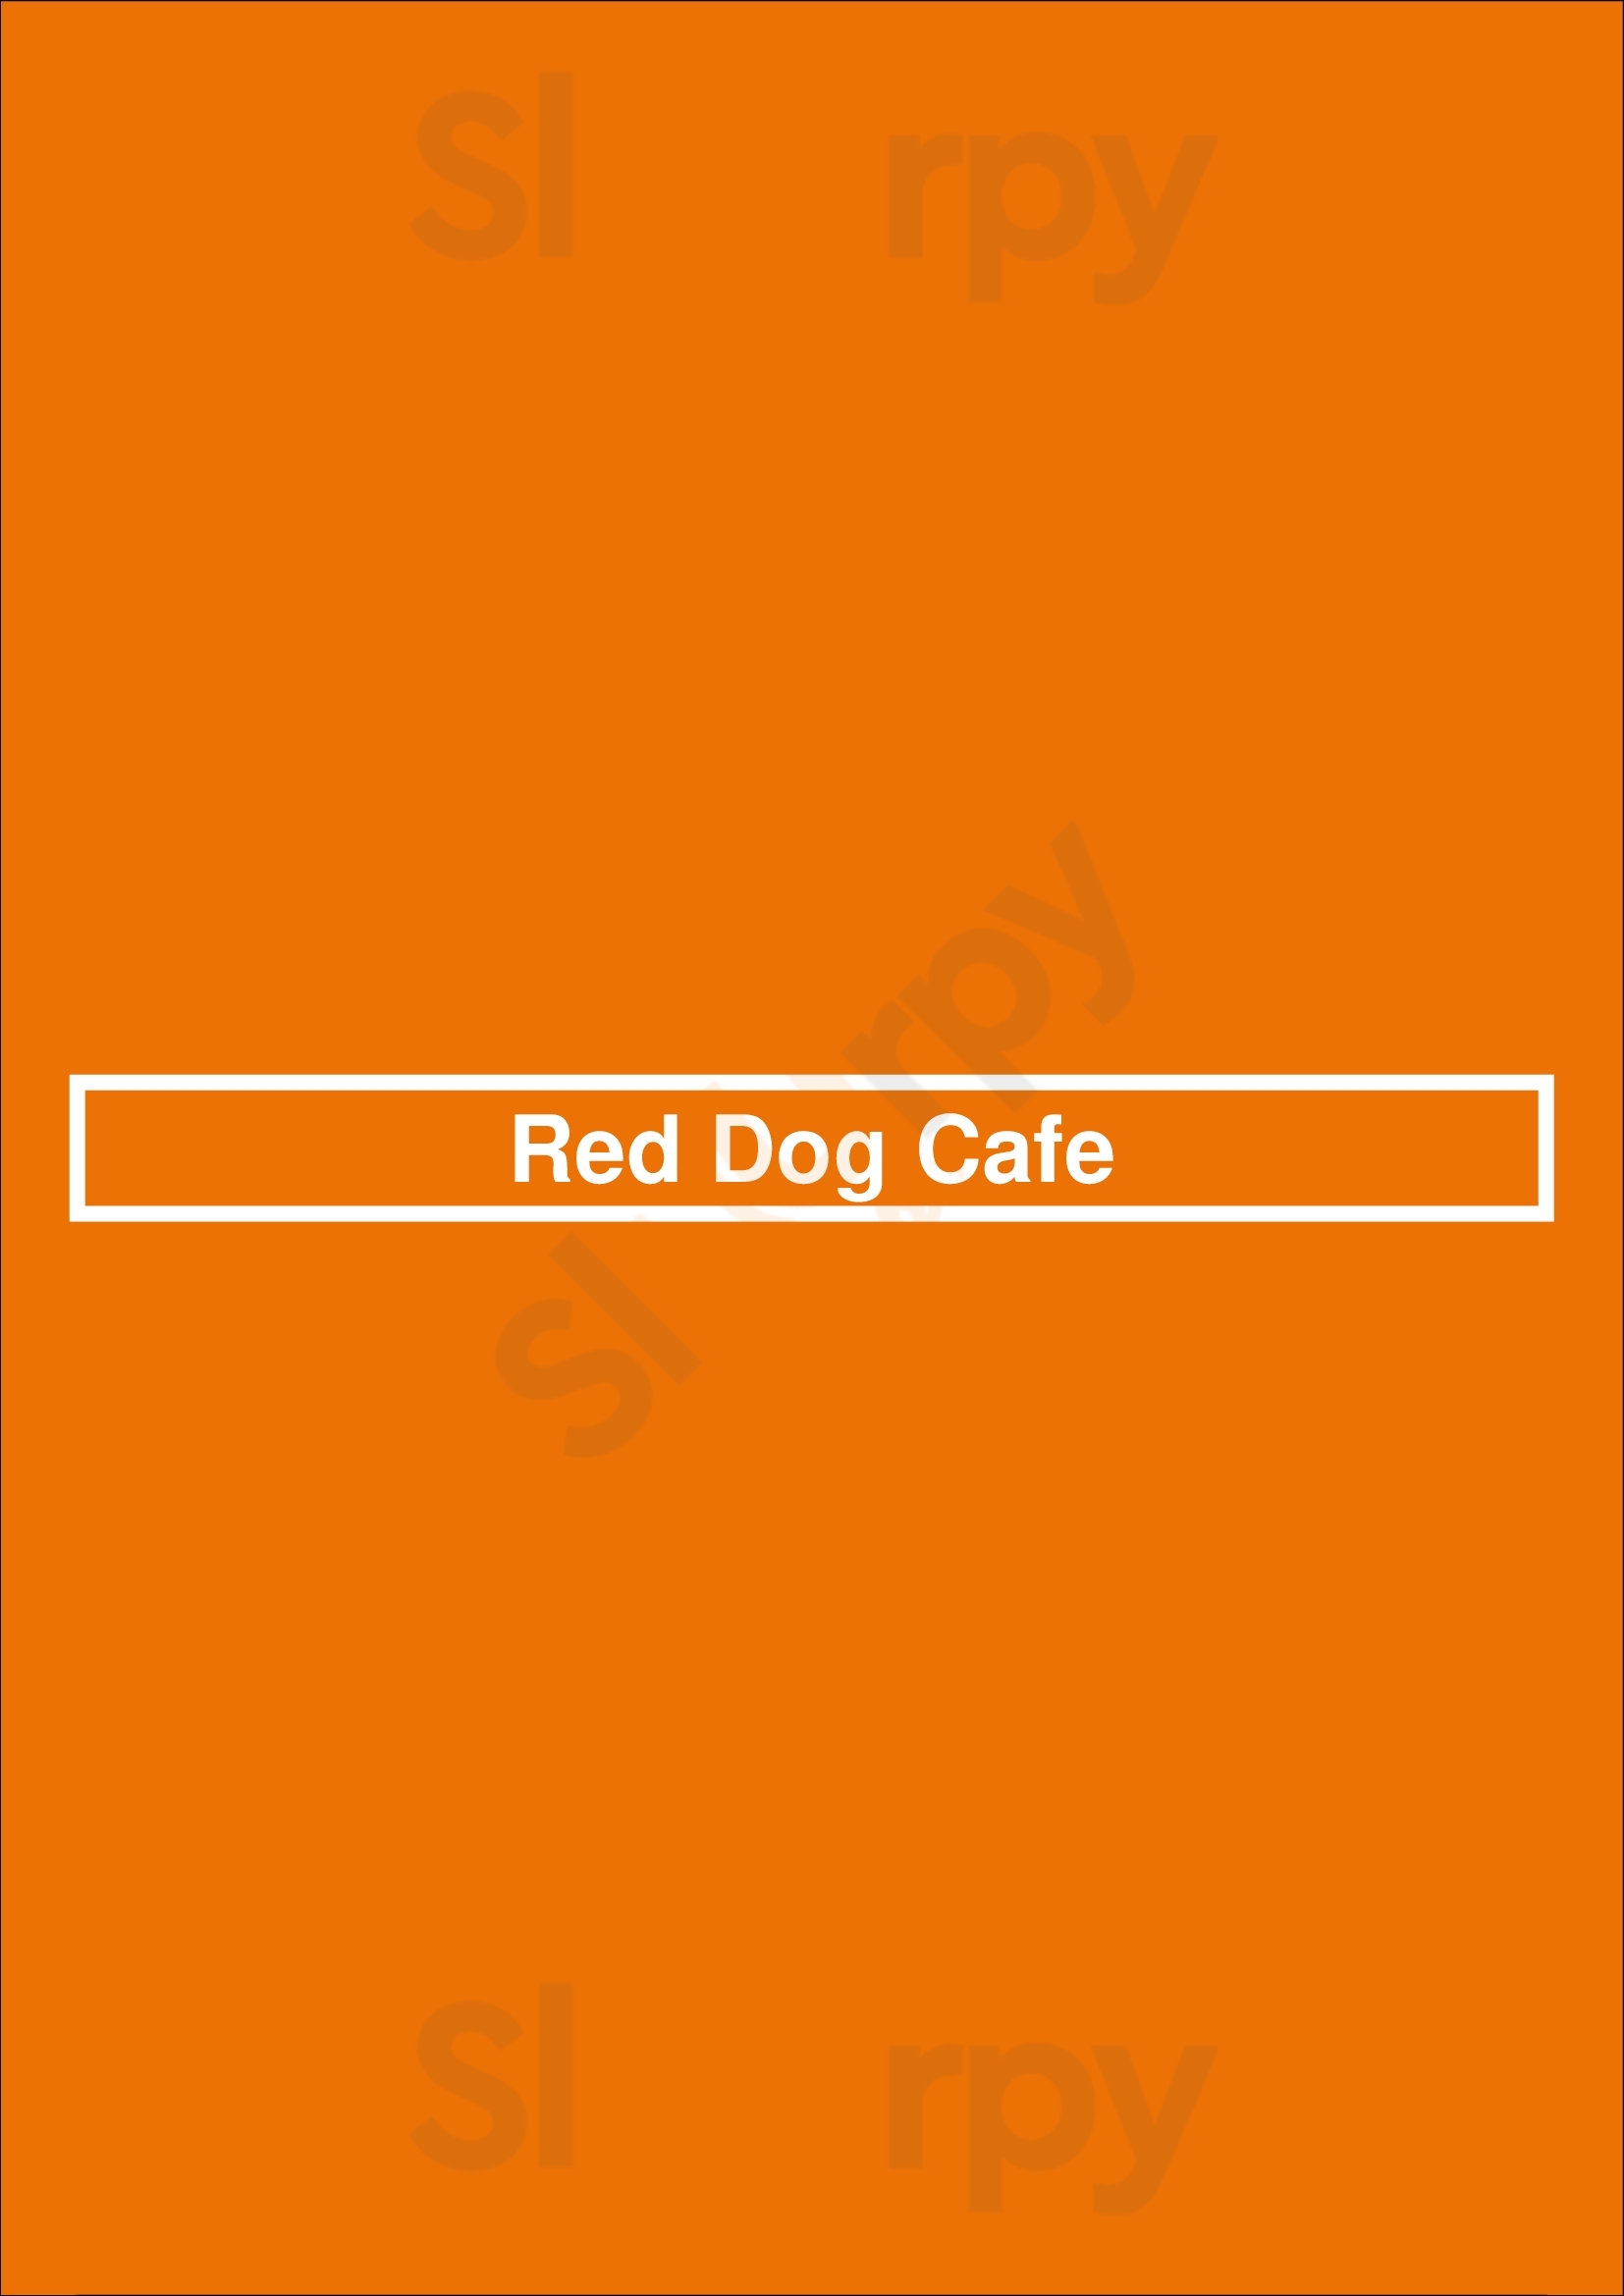 Red Dog Cafe Lyon Menu - 1